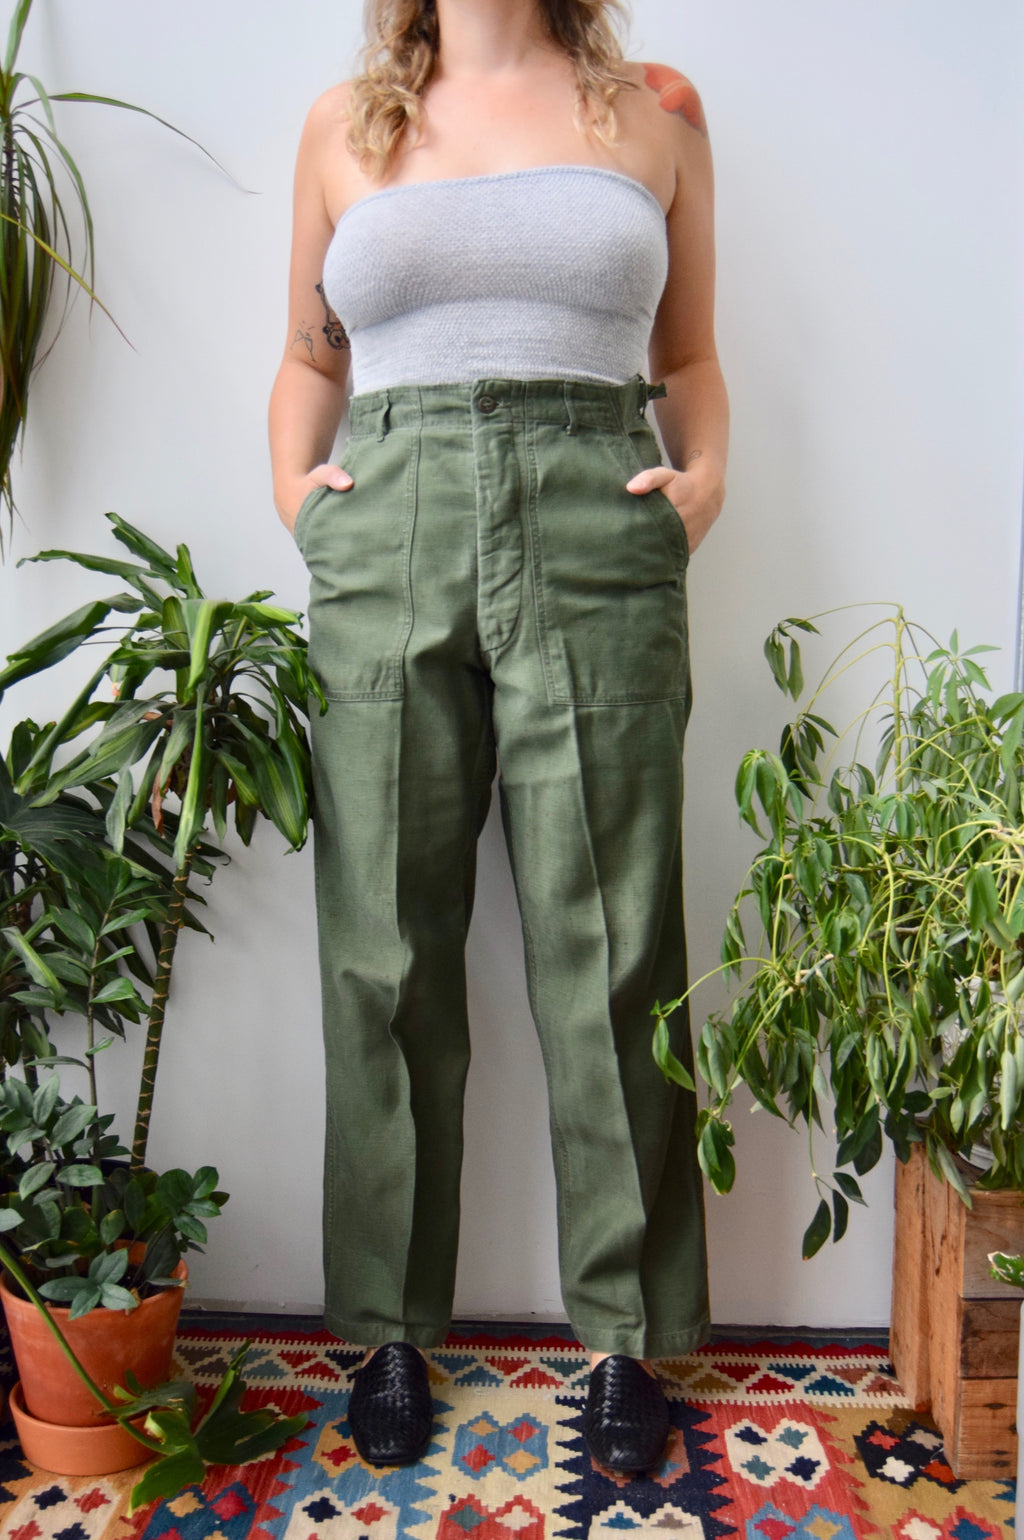 Vintage Army Pants